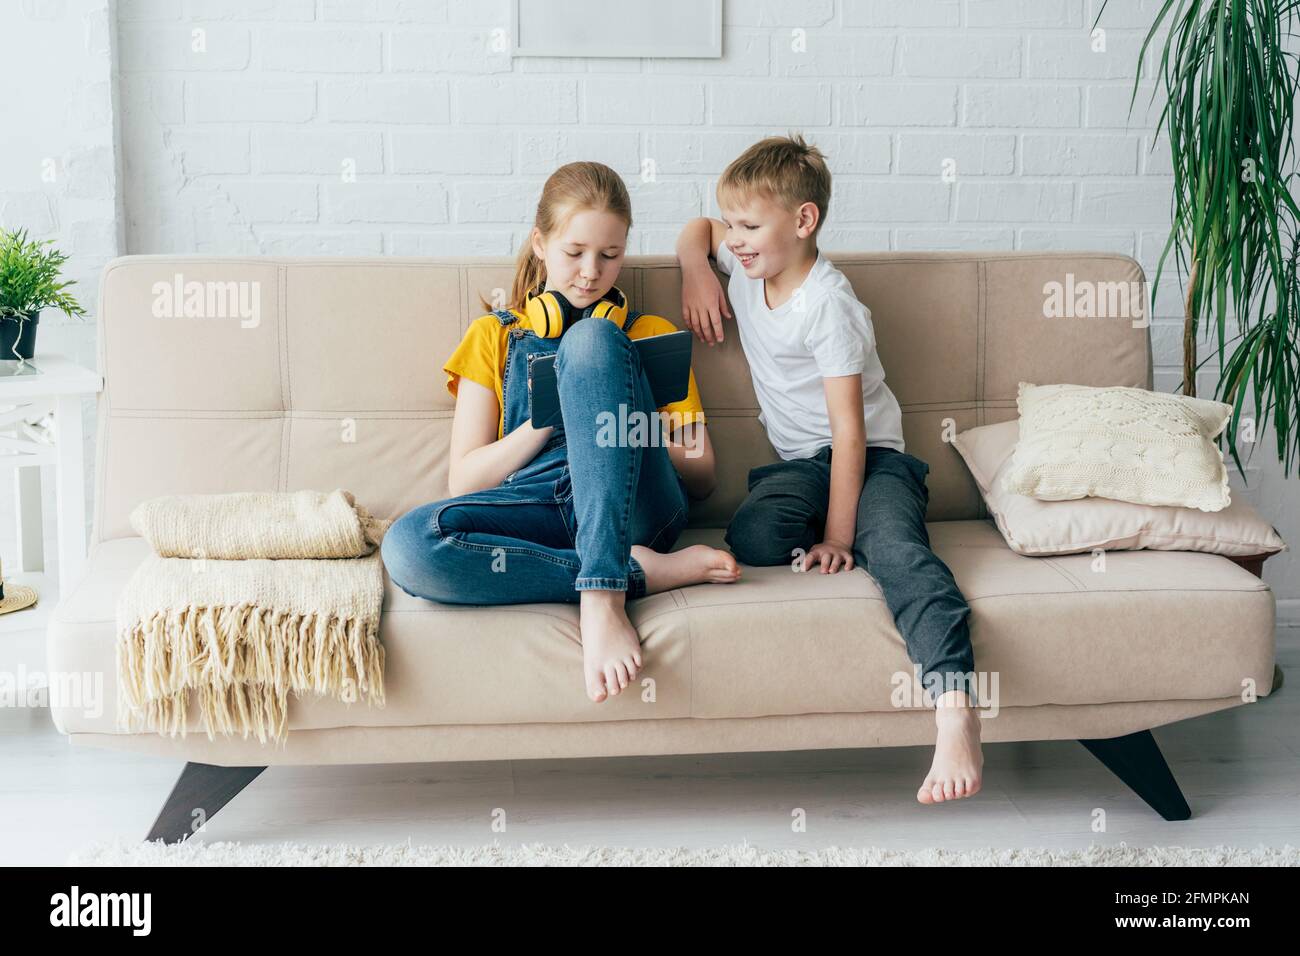 Freunde Teenager, die auf der Couch sitzen, spielen mit einem digitalen  Tablet. Kinder lernen online Stockfotografie - Alamy